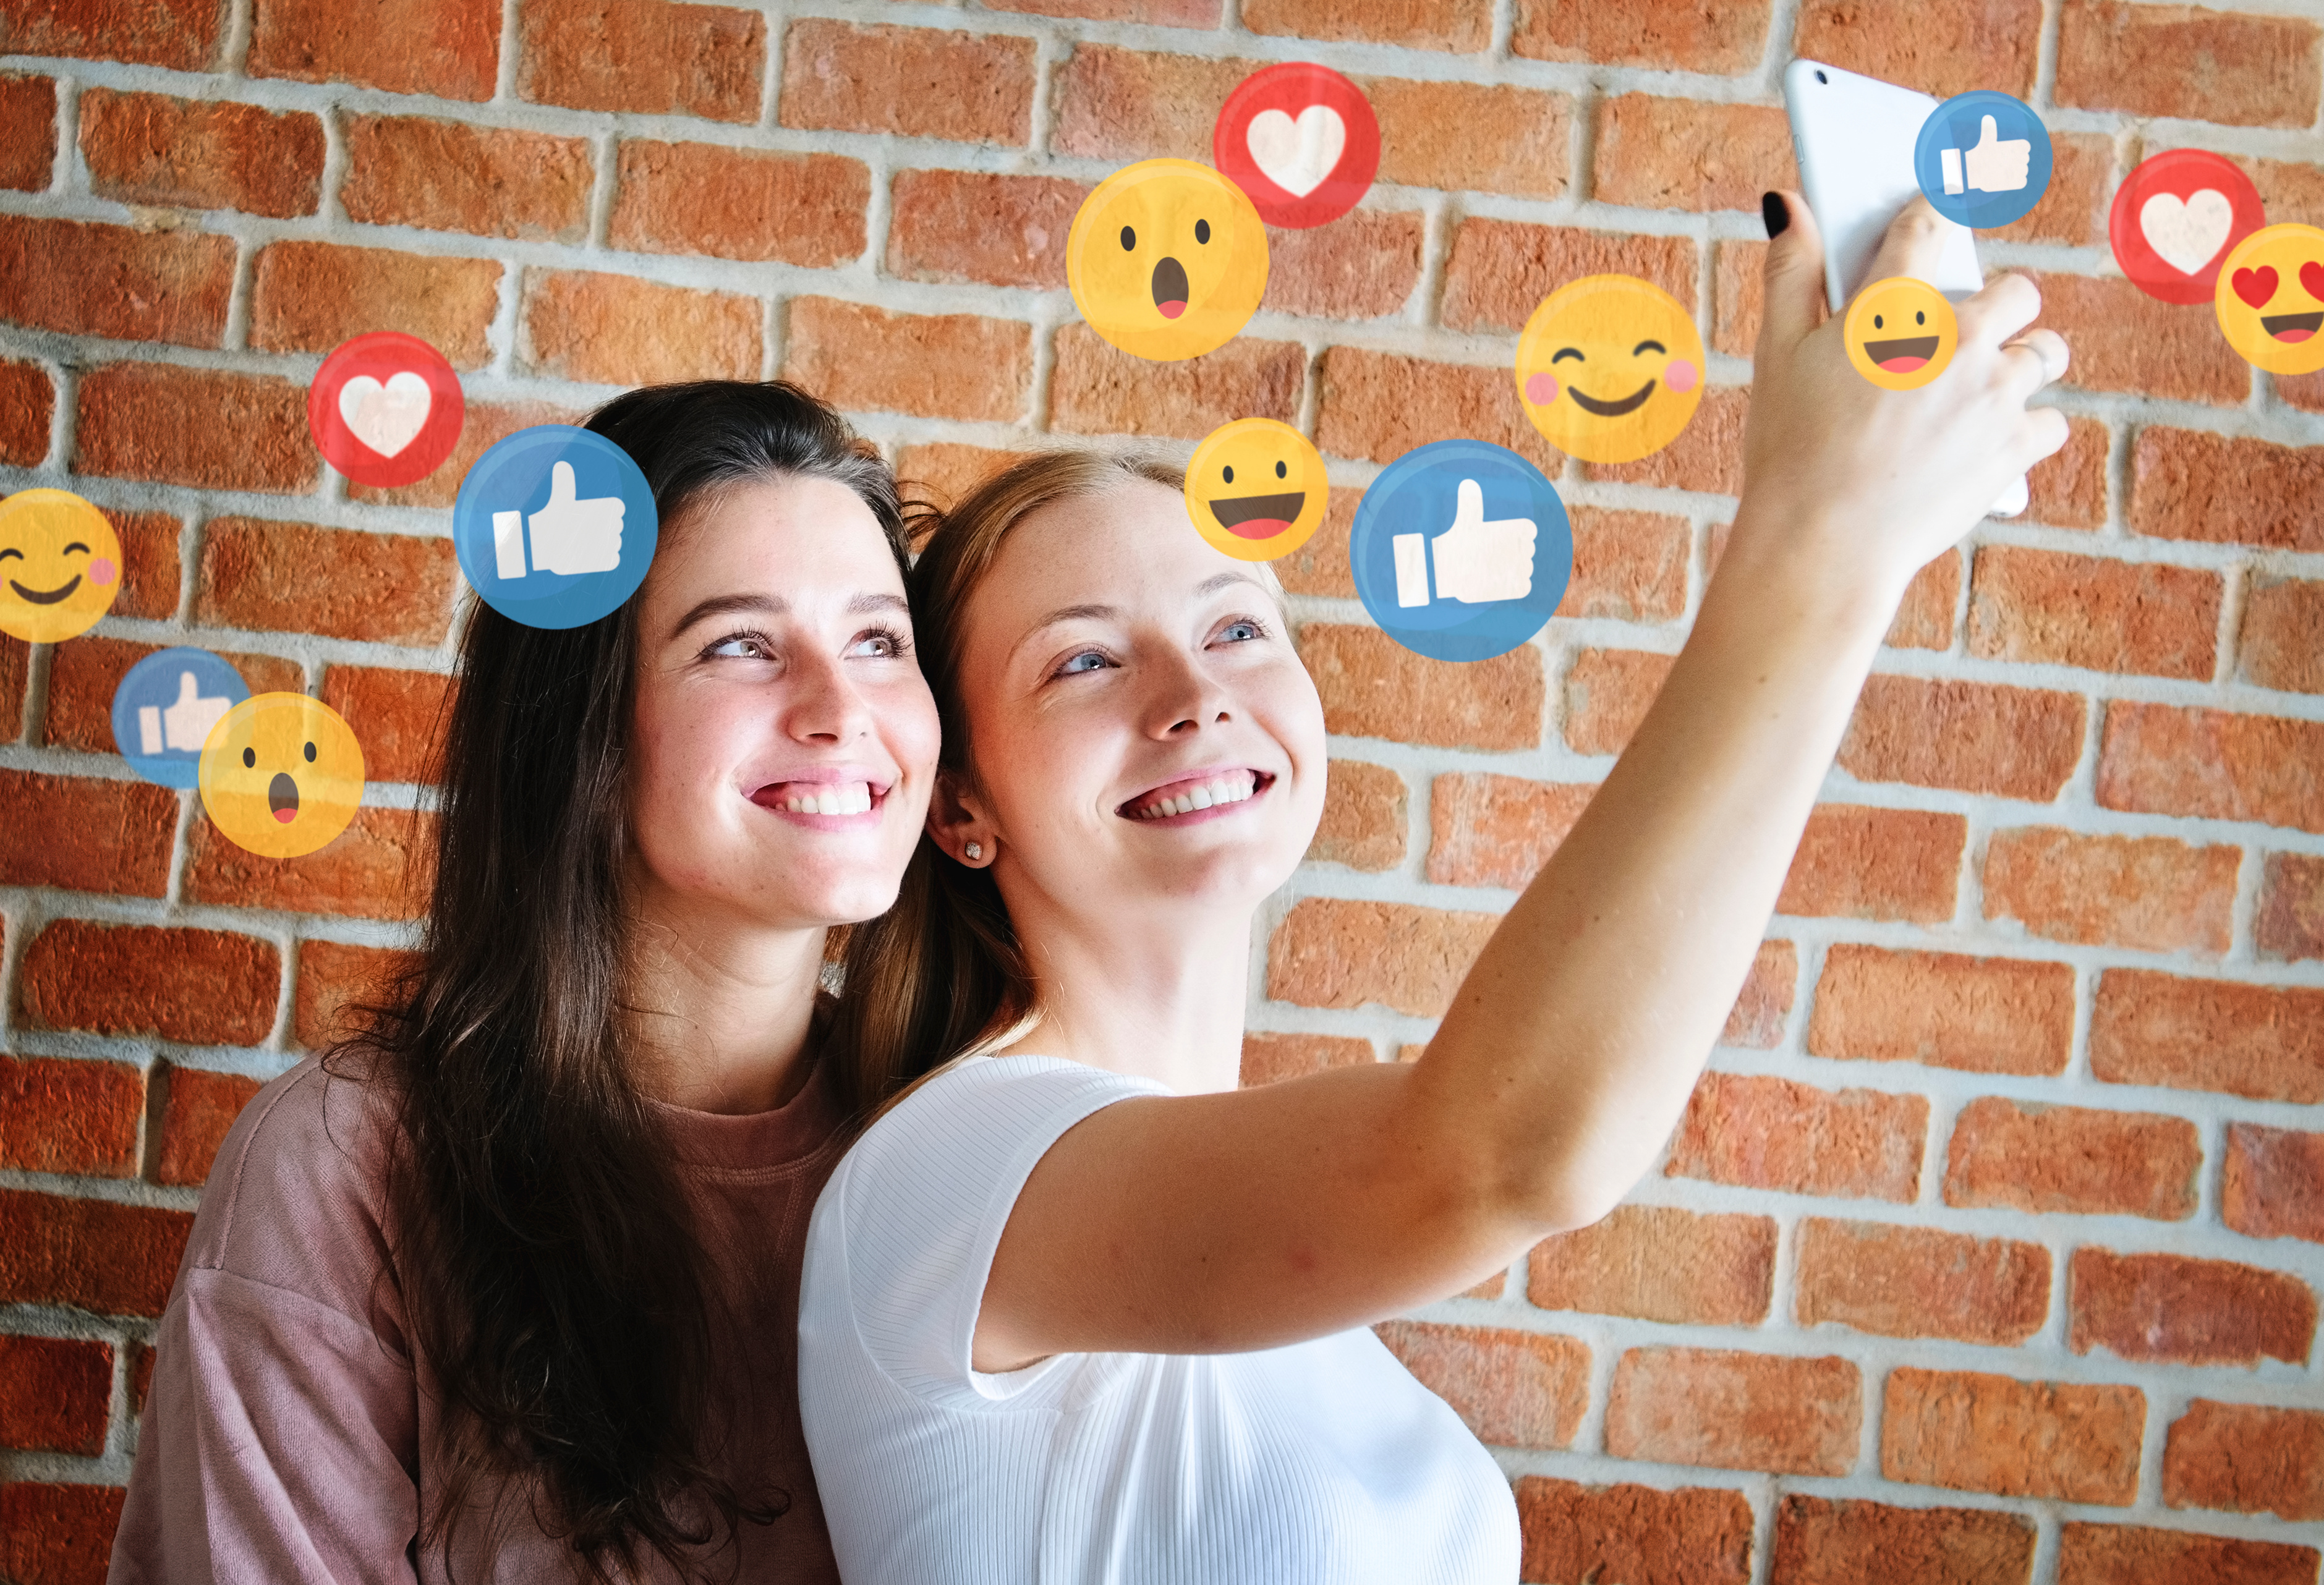 Zwei junge Frauen machen zusammen ein Selfie. Über ihnen sind Social Media Icons wie Emojis Herzen und Daumen hoch zu sehen. Im Hintergrund ist eine Backsteinmauer zu sehen.